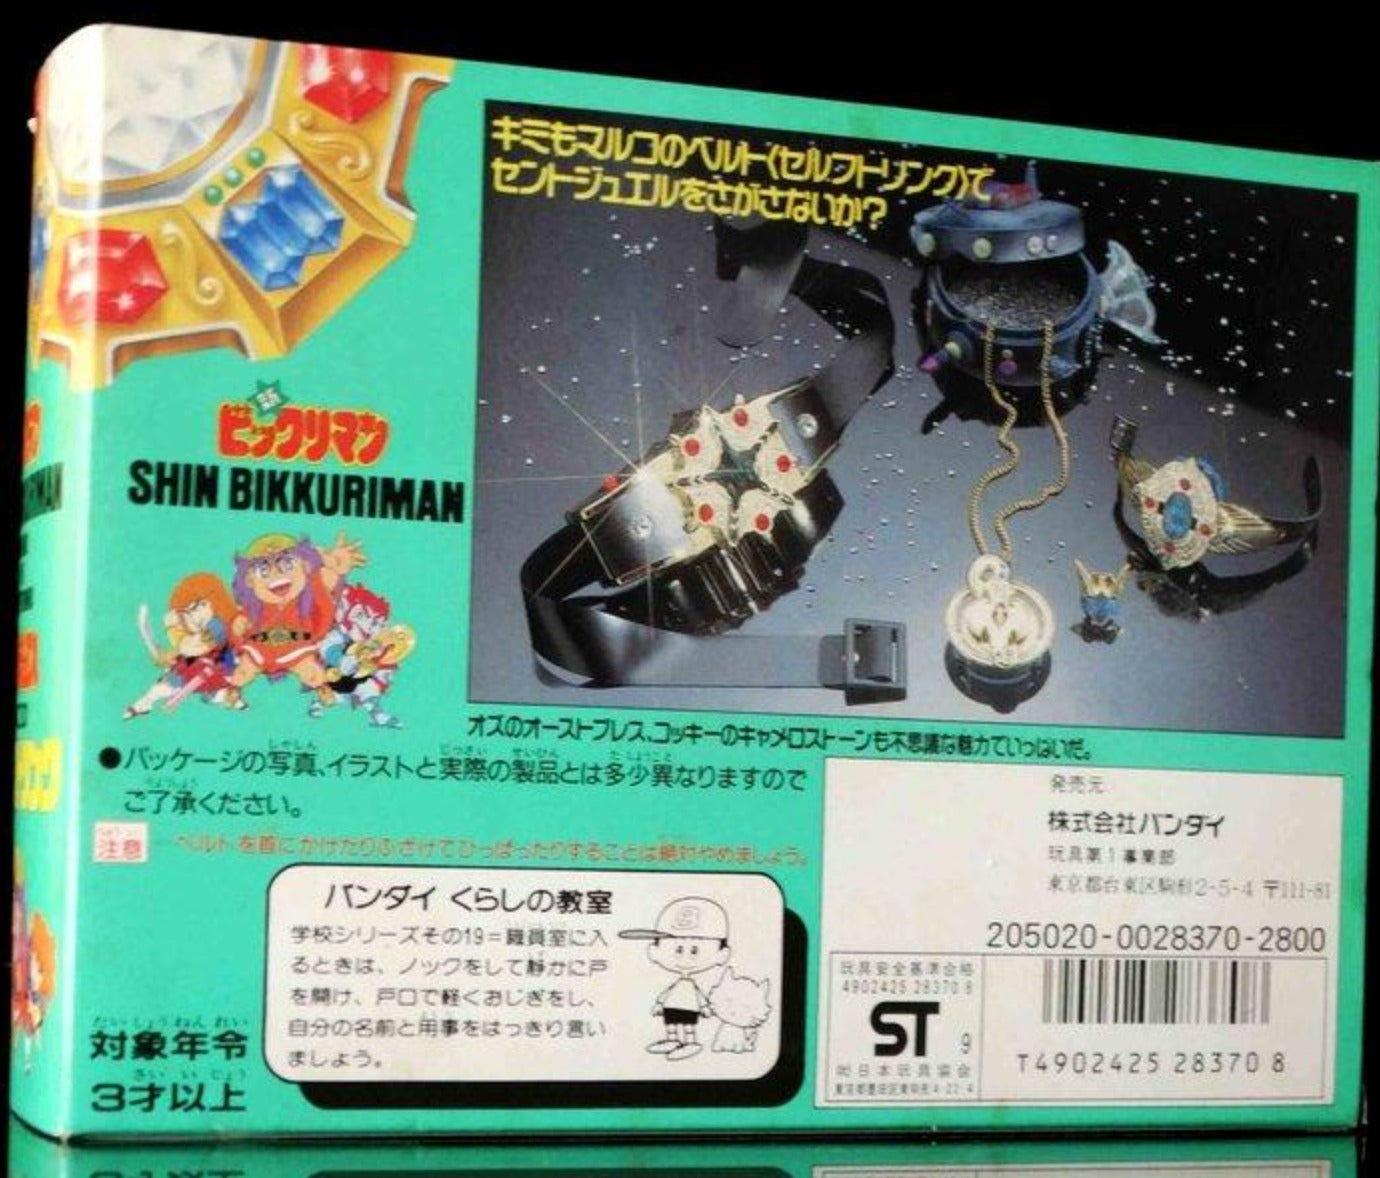 Sega Toys 1989 Shin Bikkuriman Maruko no Serufutorinku Self and Link Accessories Trading Figure